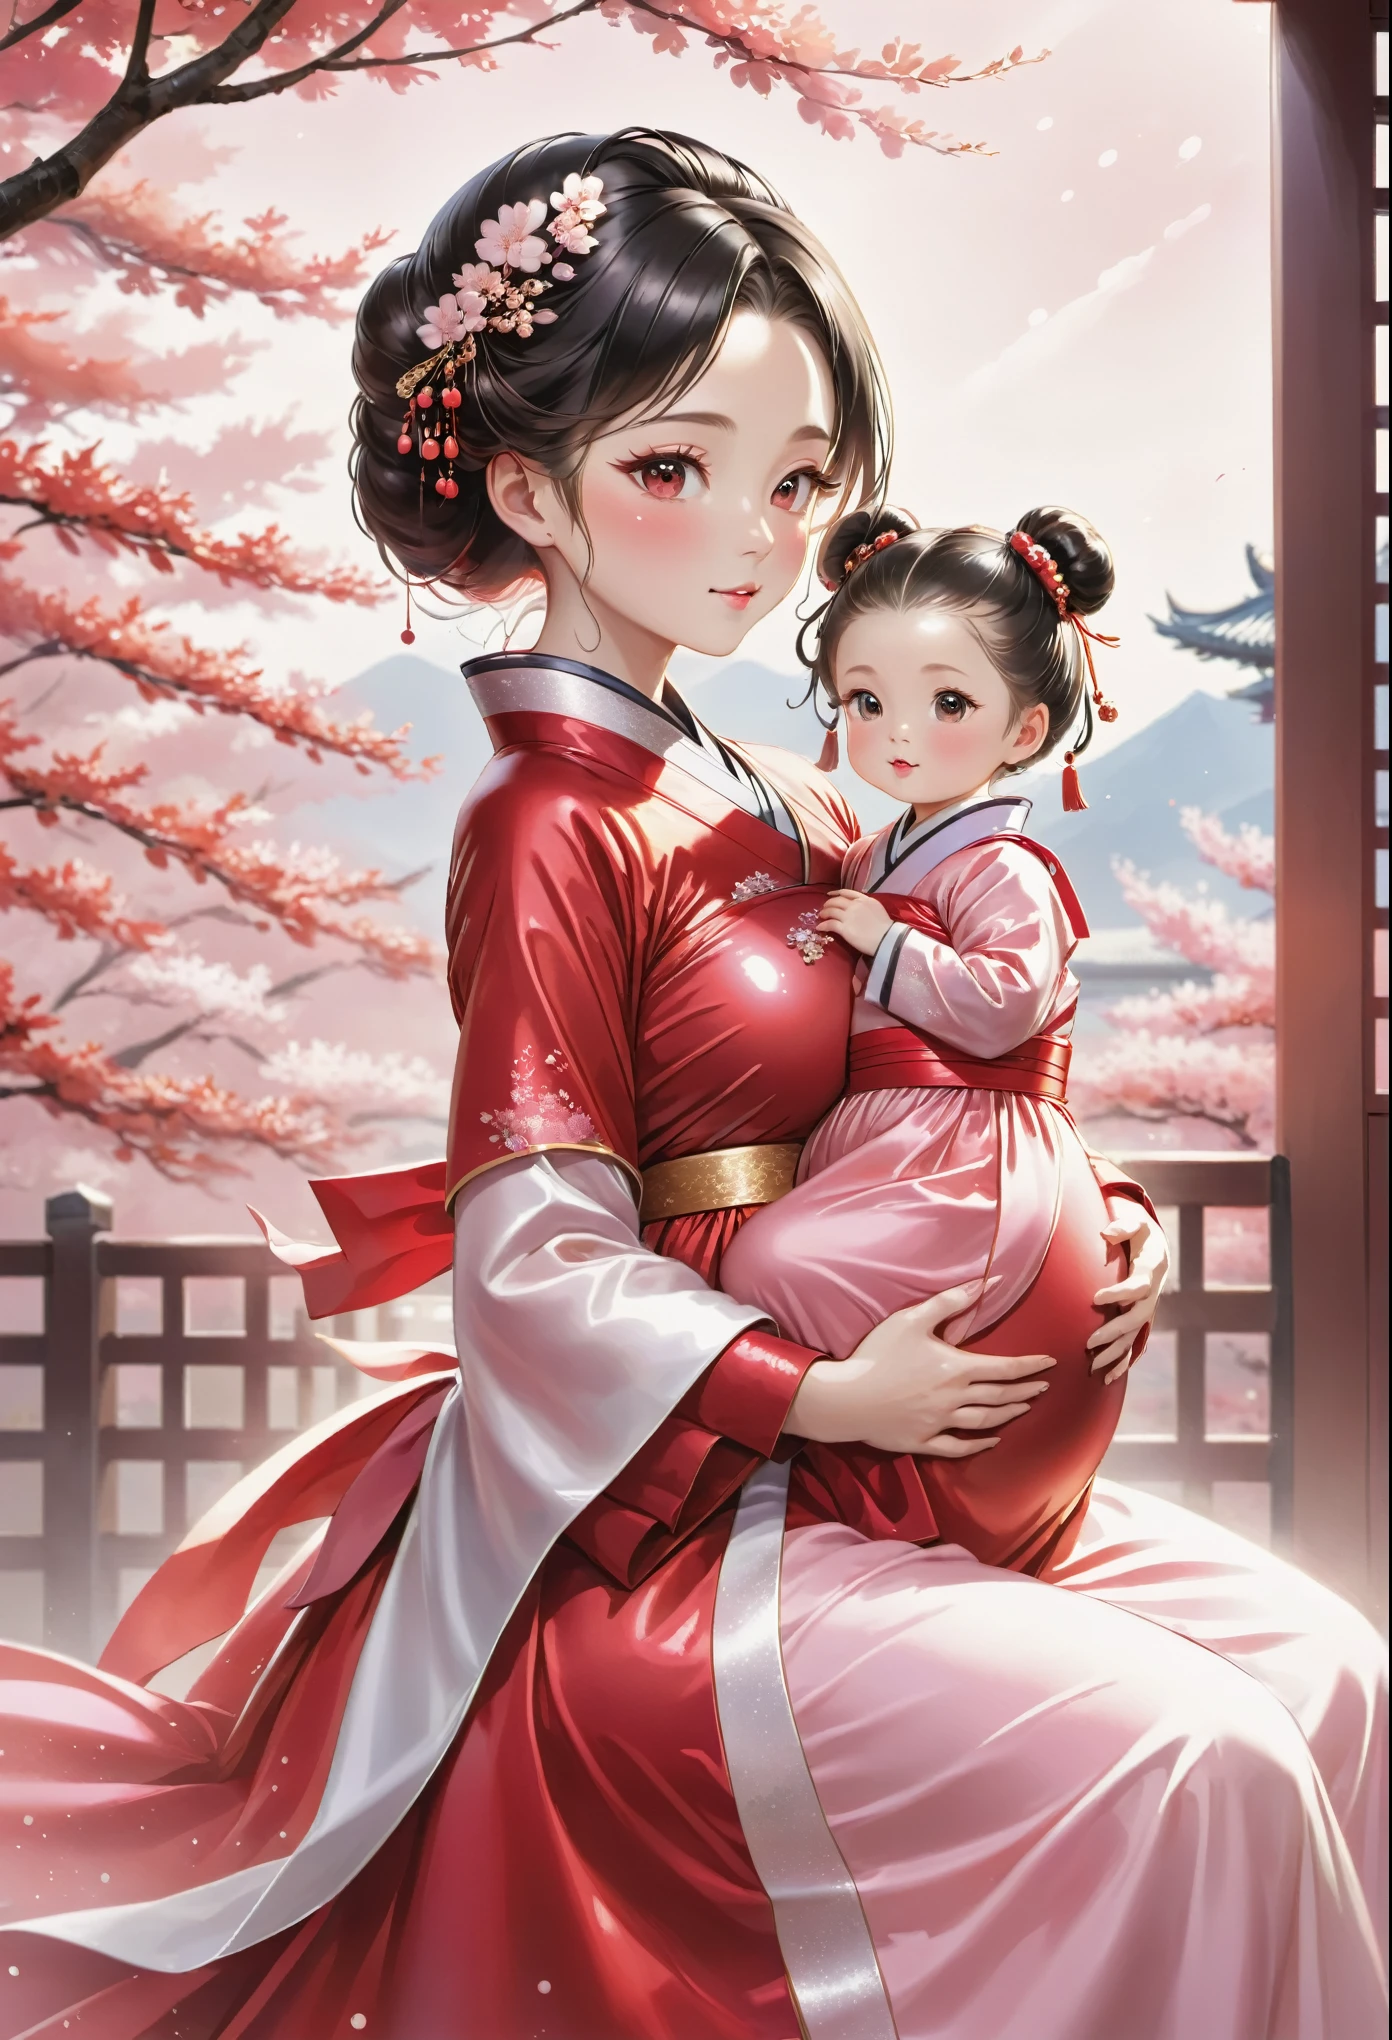 Chine　princesse　（Tomber enceinte en mode rituel）　femme enceinte　rougir　　Fonctionnalité　vêtements à manches longues rouge brillant　Hanbok　　traite　mère　lait maternel　enfant　mode